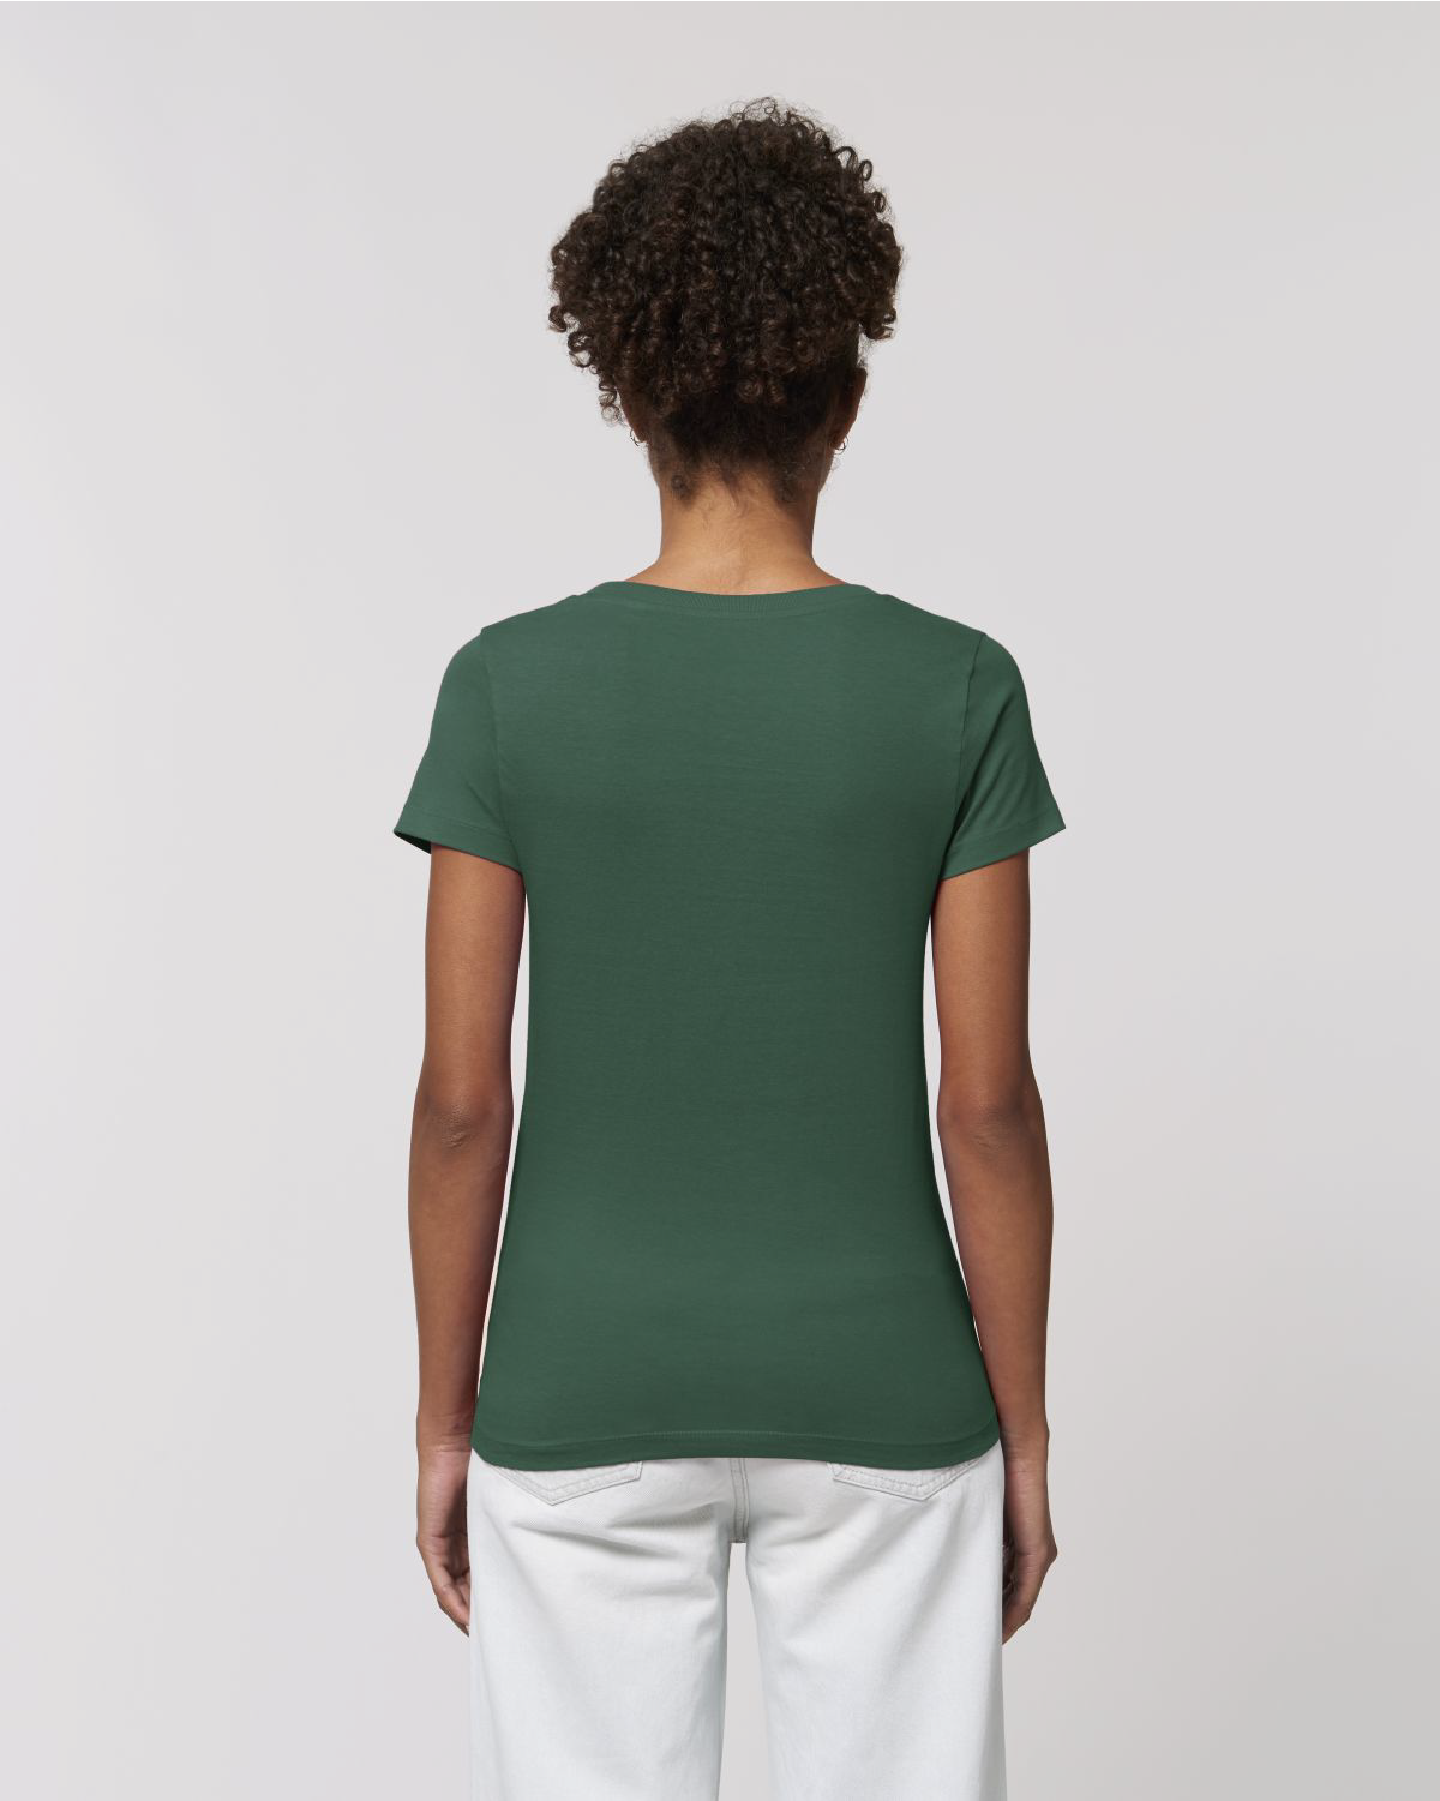 T-Shirt Damen LAUSITZ grün